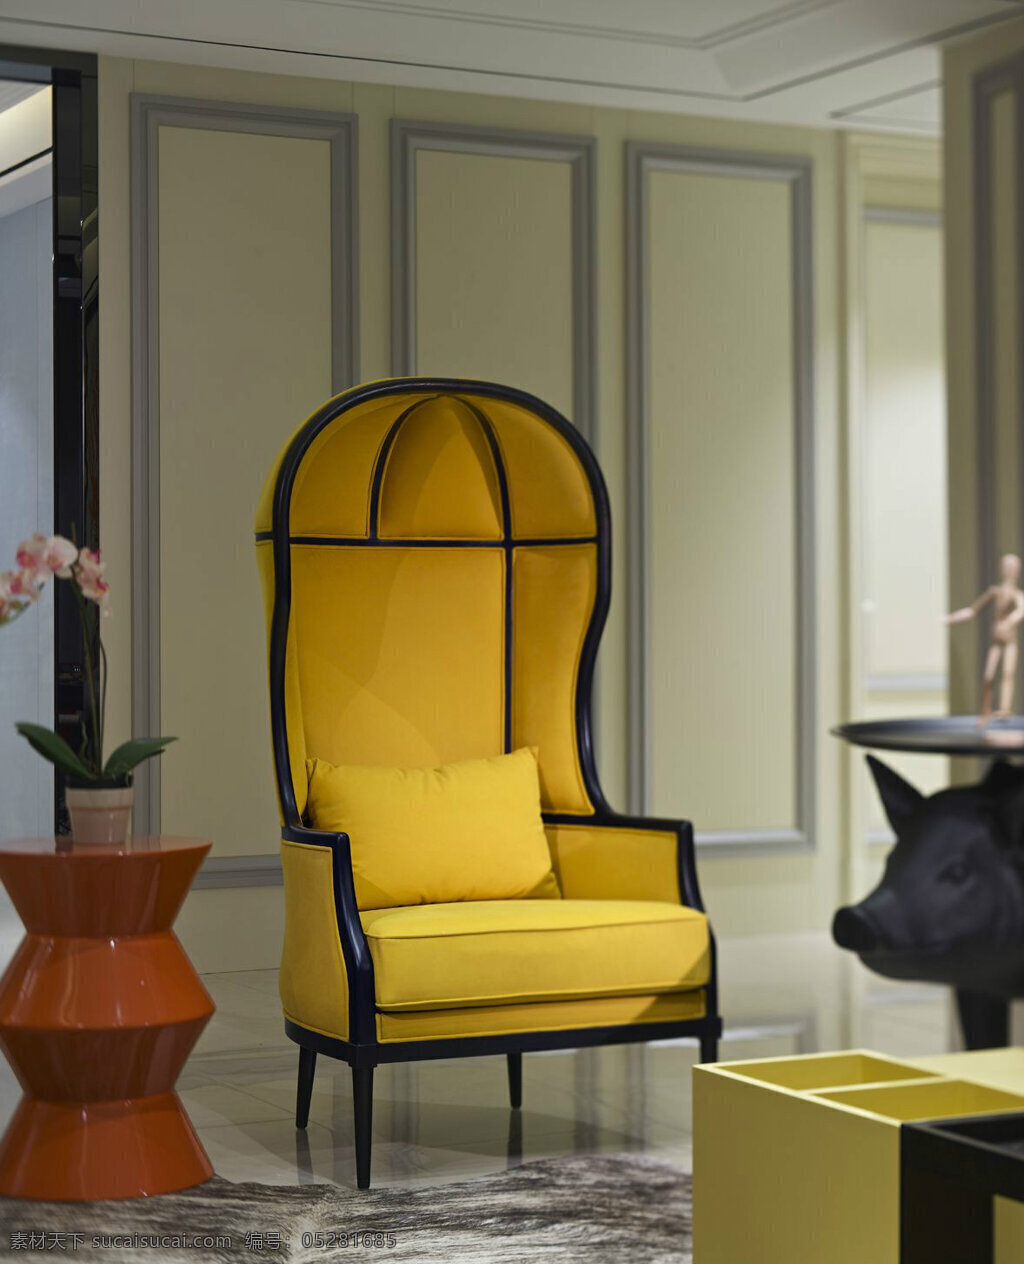 现代 时尚 客厅 黄色 椅子 室内装修 效果图 大理石地板 客厅装修 黄色椅子 褐色花瓶